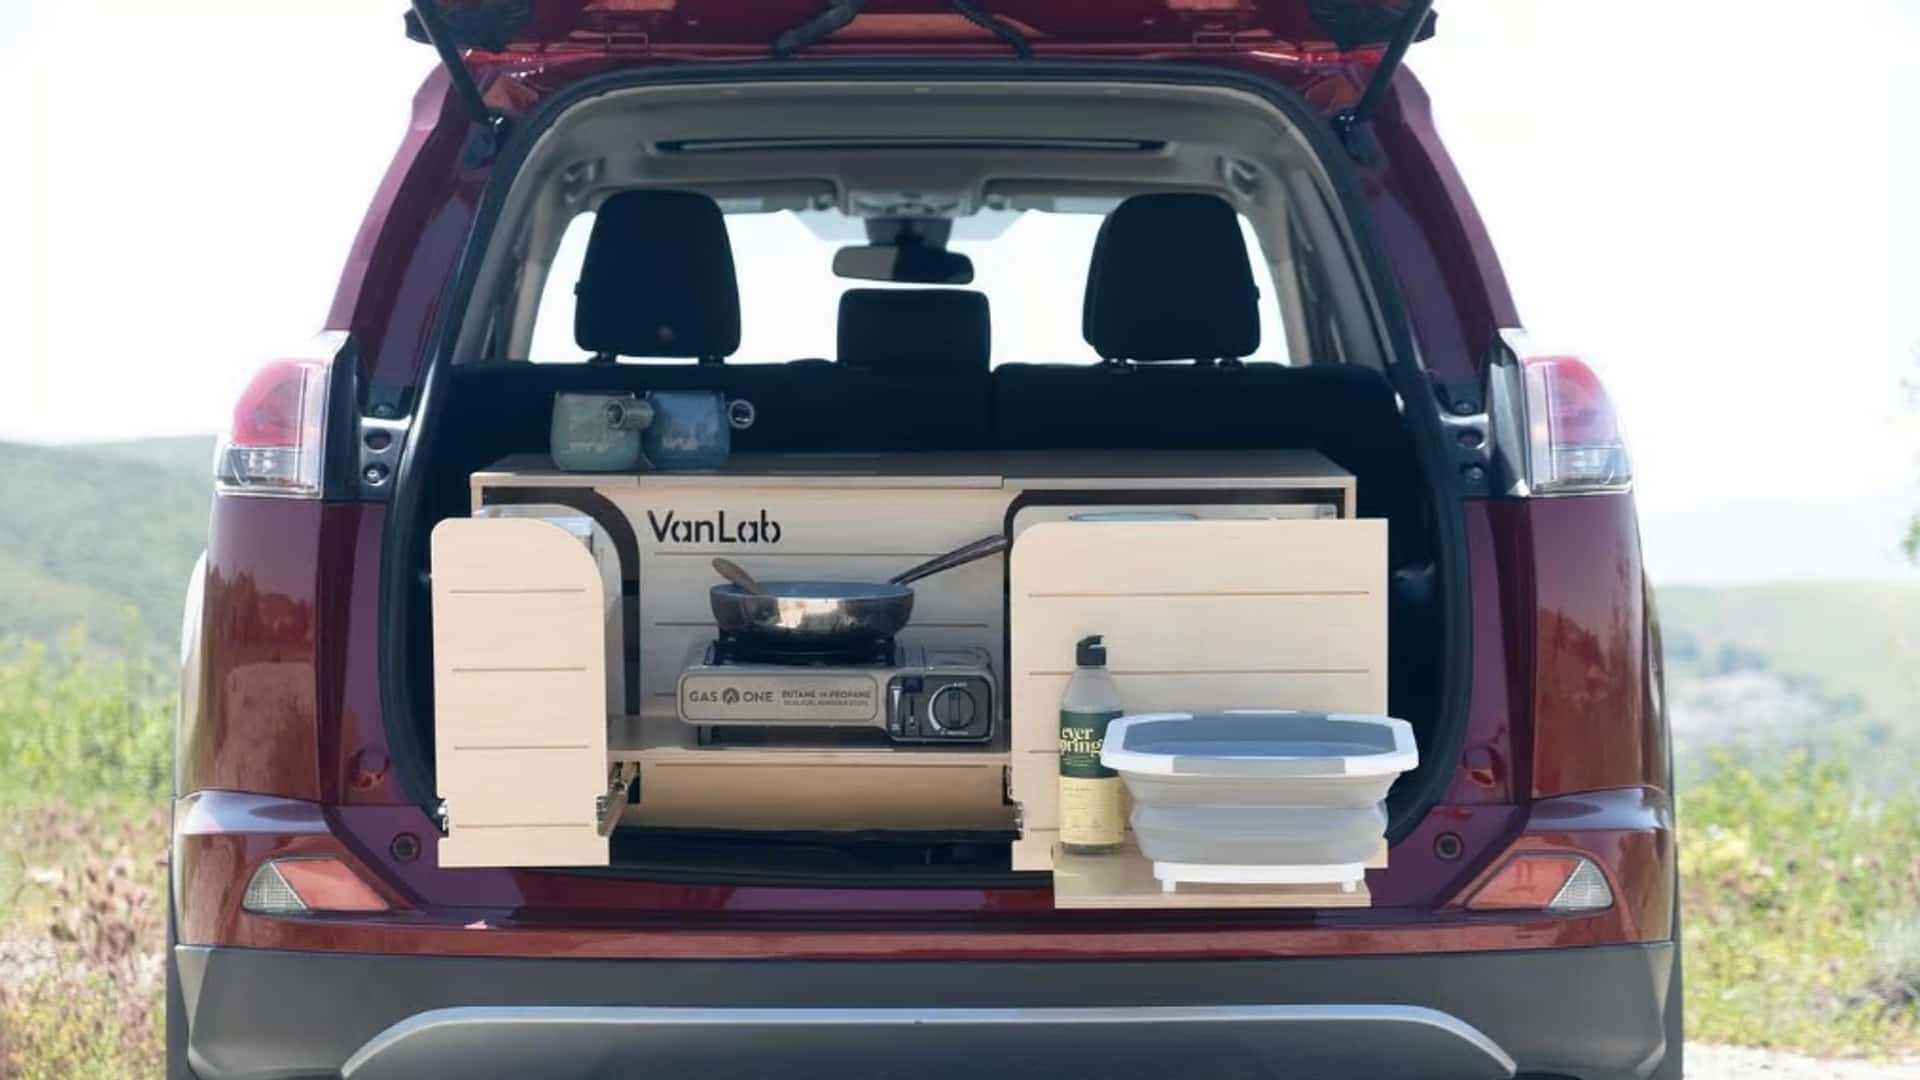 VanLab ofrece kits para convertir furgonetas en autocaravanas